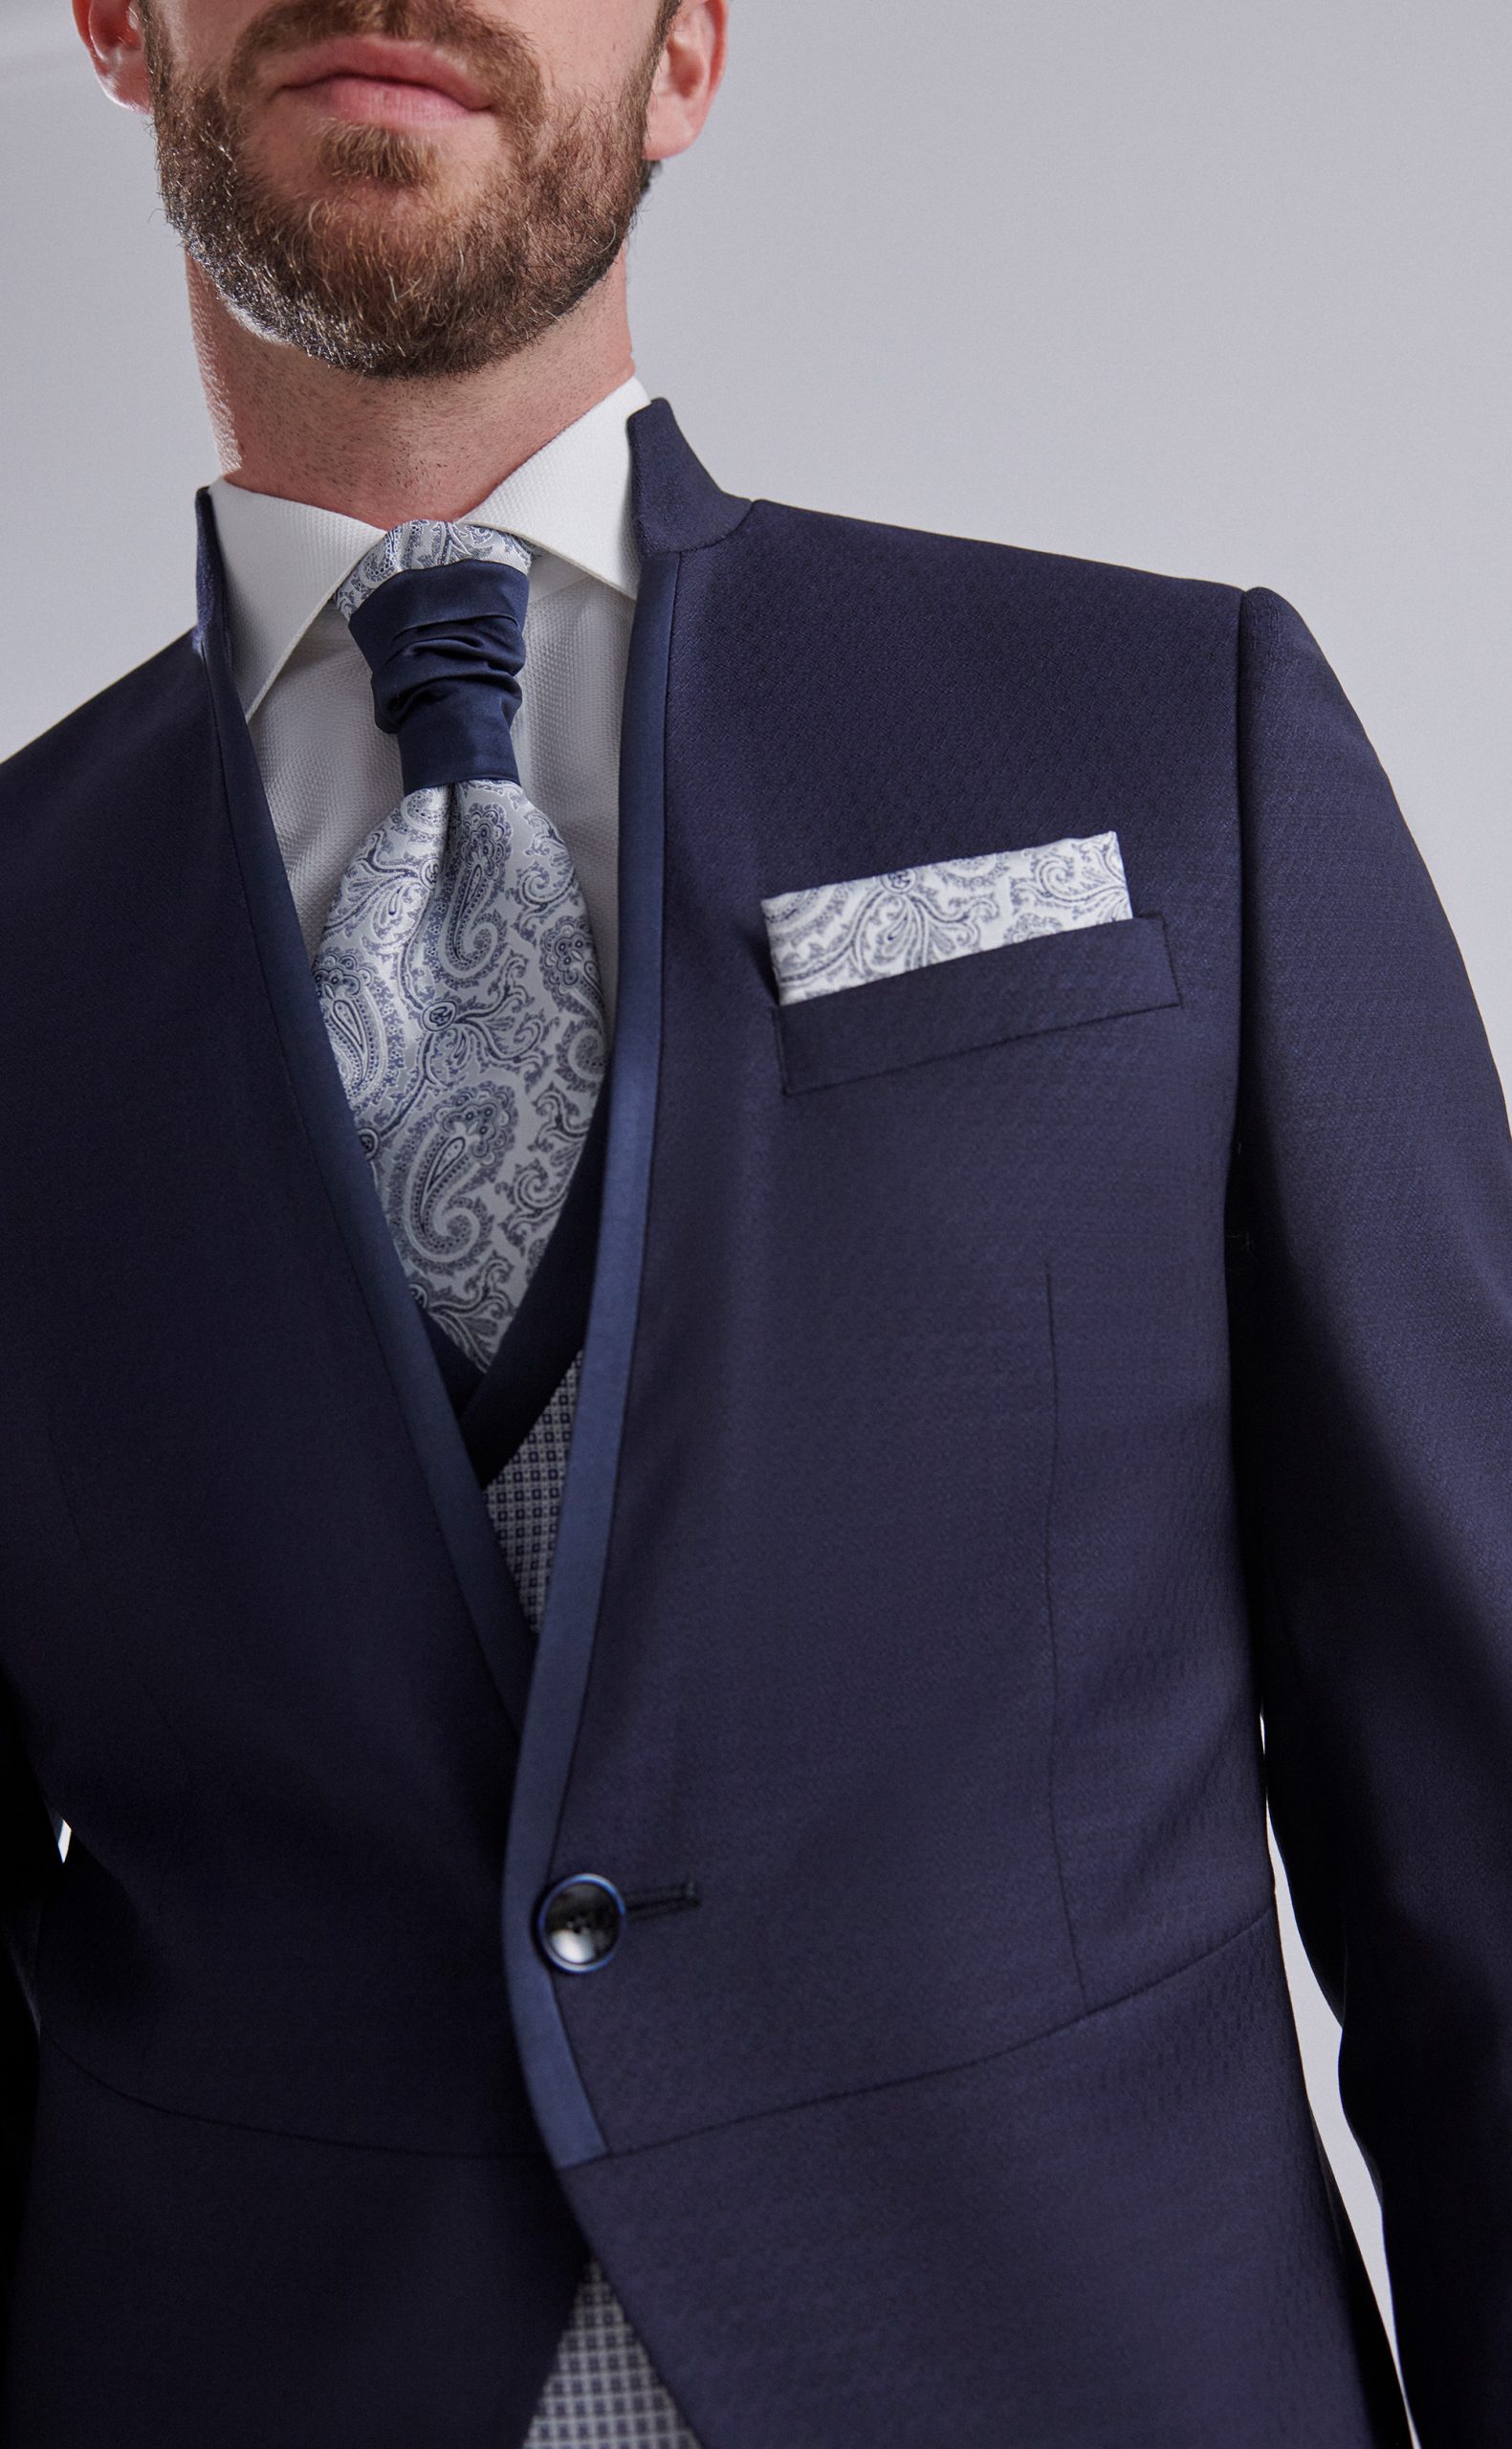 Traje de Novio Roberto Vicentti Modelo Eternal 14.24.300 en color navy con chaqueta entallada, chaleco con patrón y pantalón de corte clásico, ideal para bodas y eventos formales. Ahora en oferta.